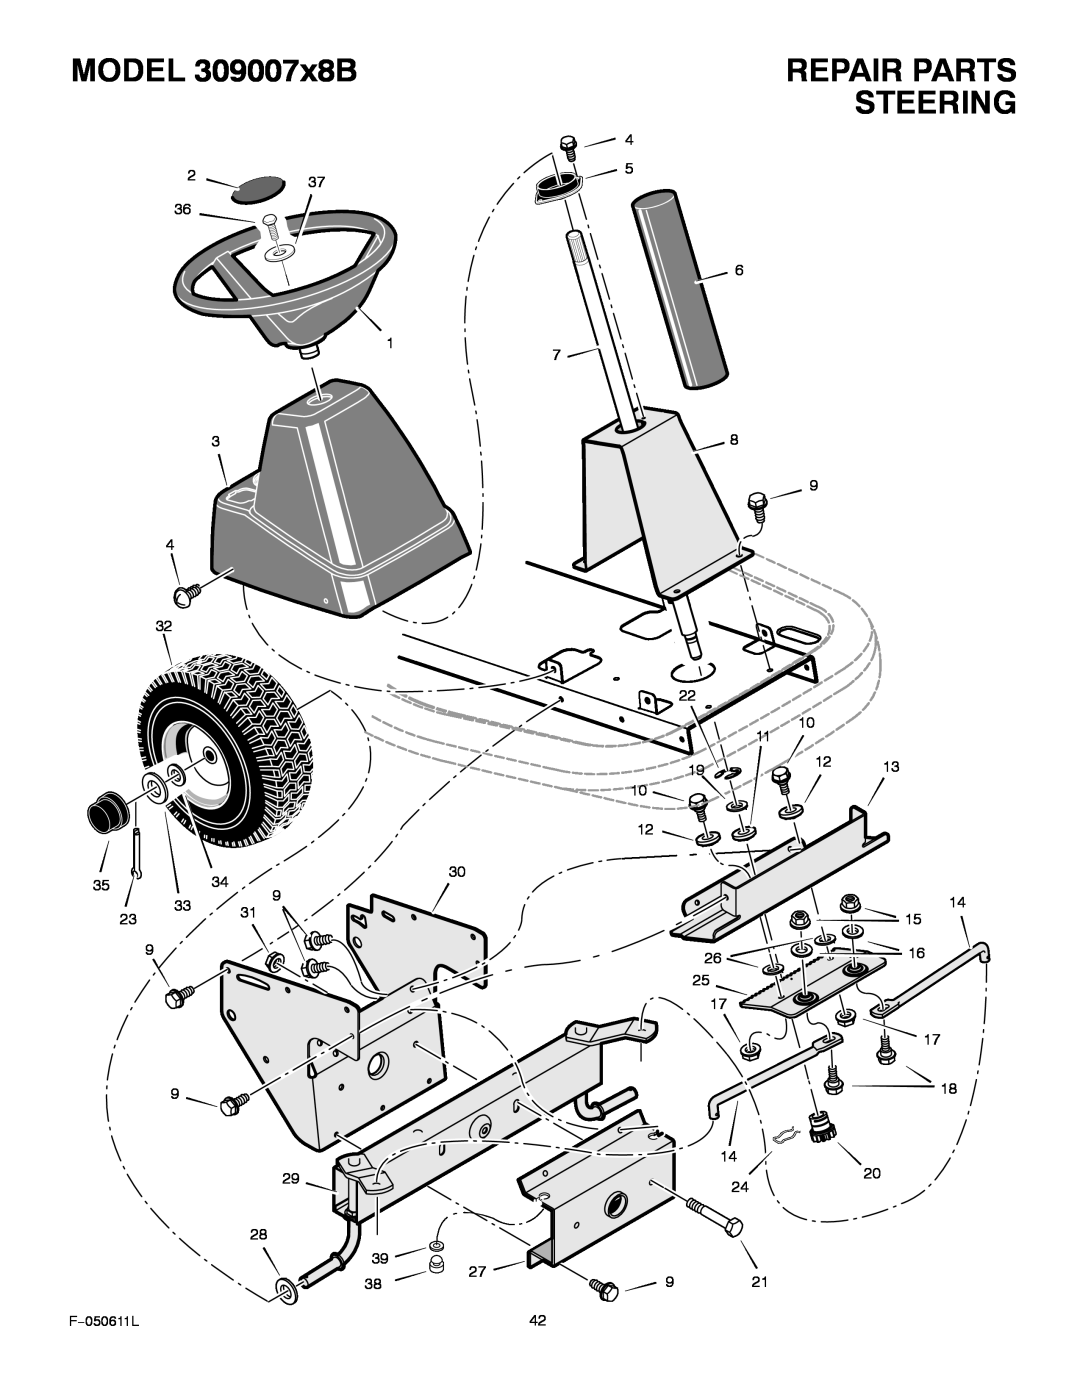 Murray manual Steering, MODEL 309007x8B, Repair Parts 